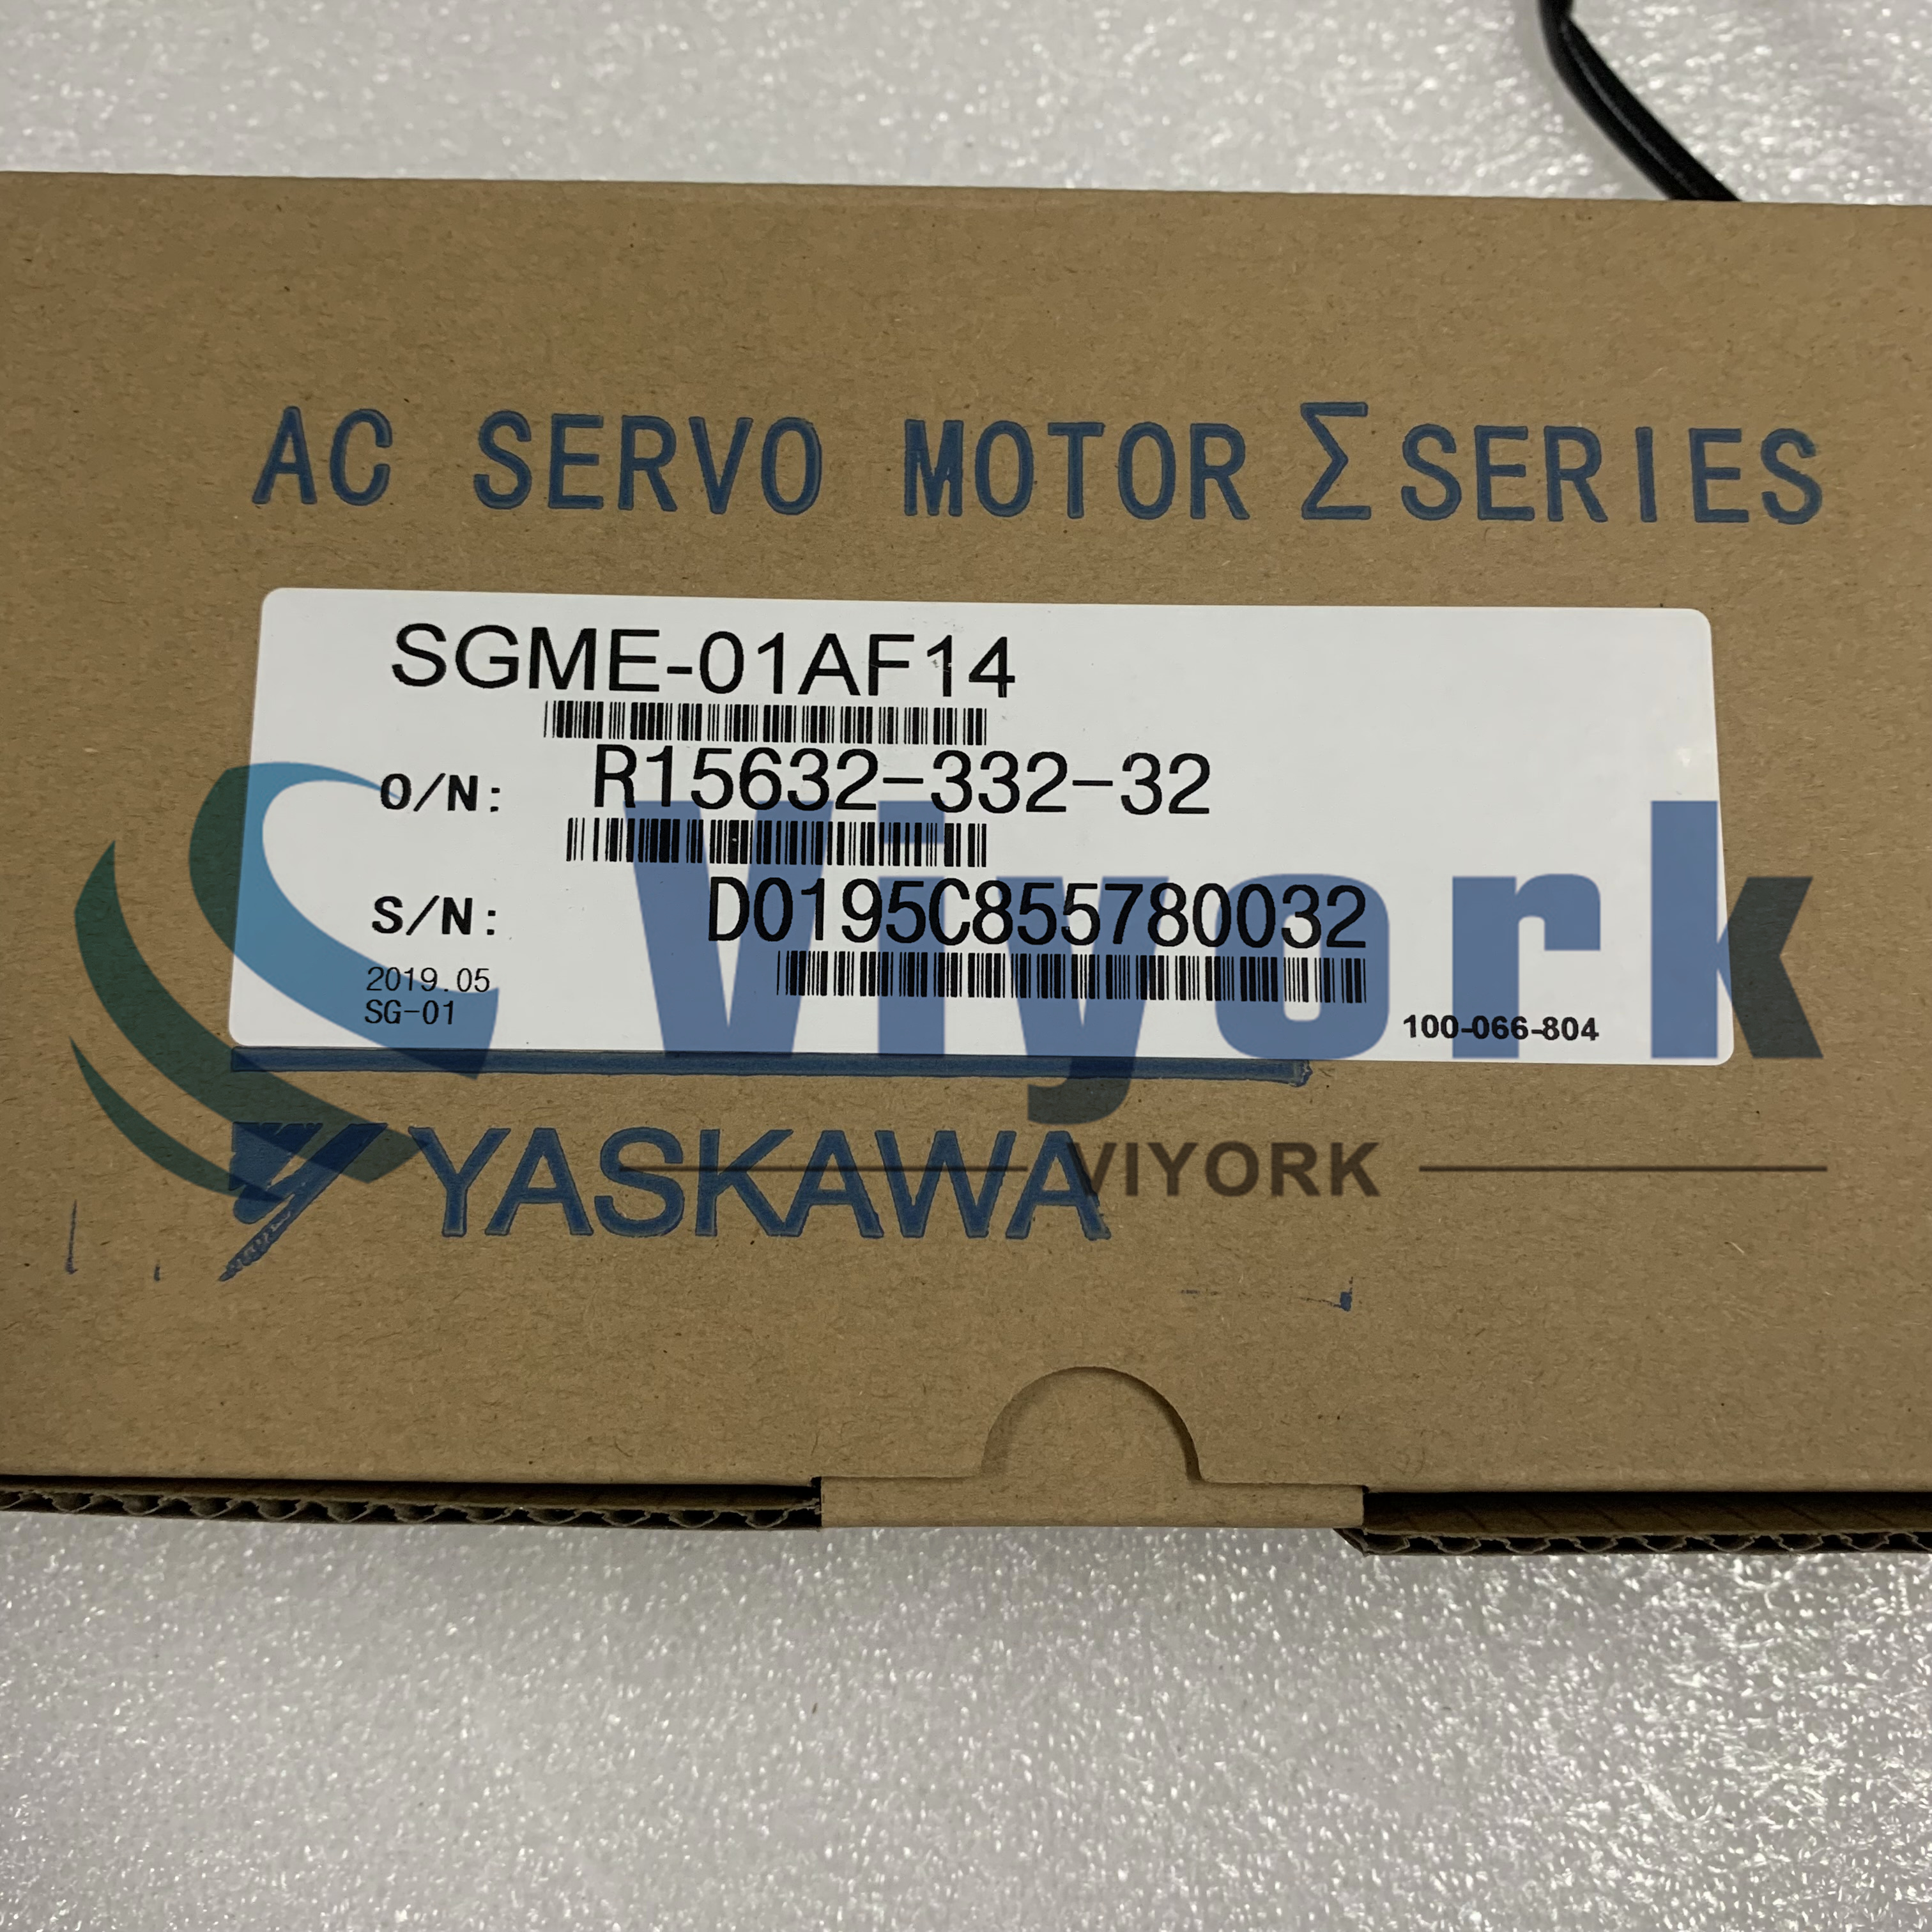 Yaskawa SGME-01AF14 AC SERVO MOTOR AC 100W 200V 0.318NM 3000RPM NEW